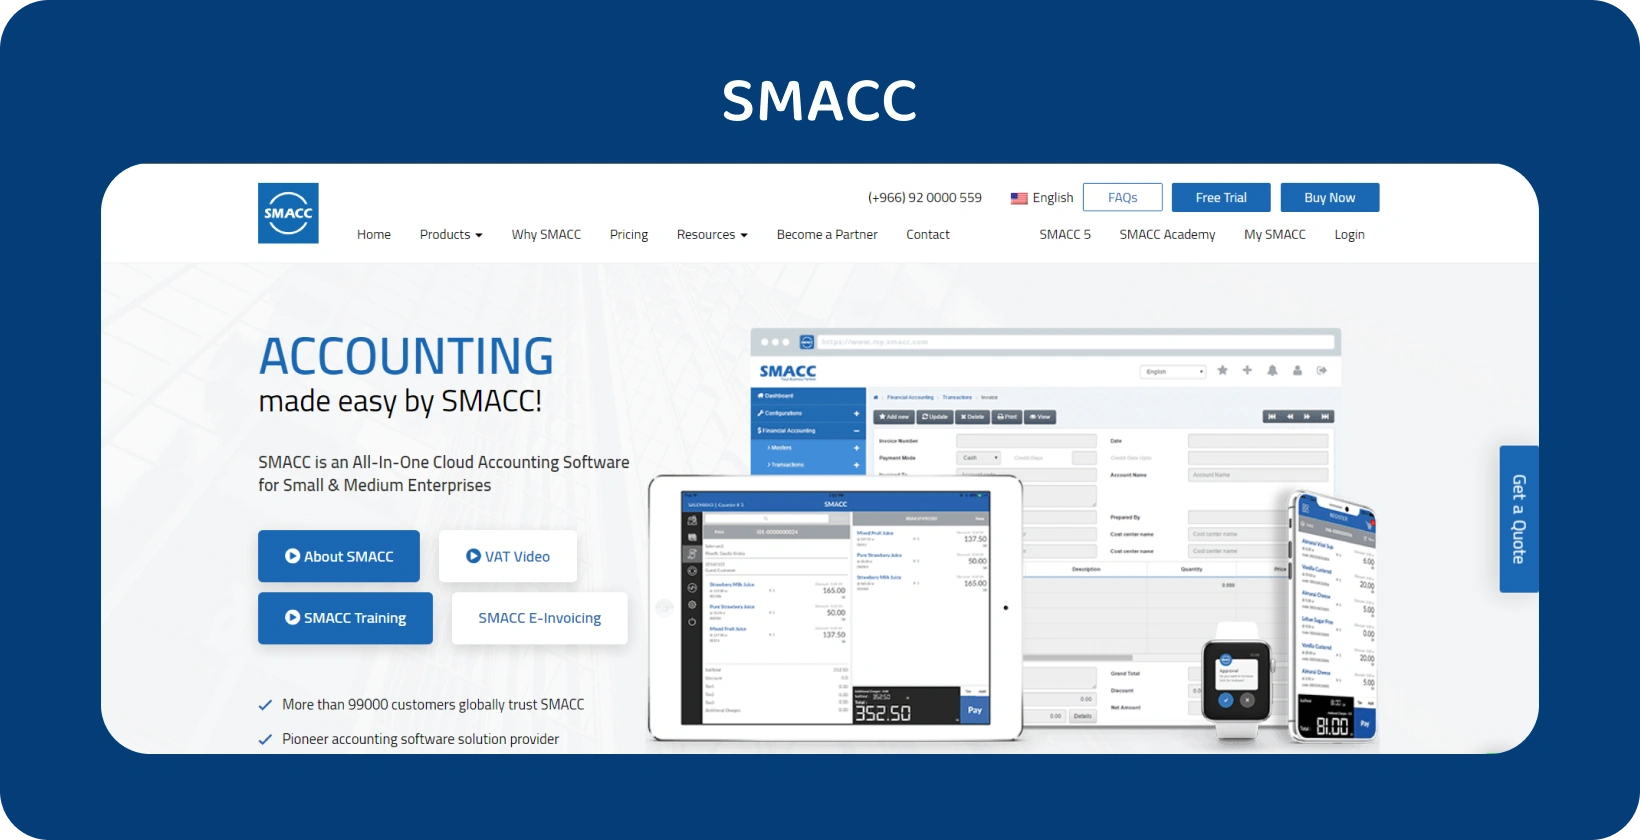 SMACC תוכנת הנהלת חשבונות בענן המוצגת במכשירים שונים, ומשפרת את הניהול הפיננסי עבור עסקים קטנים ובינוניים.